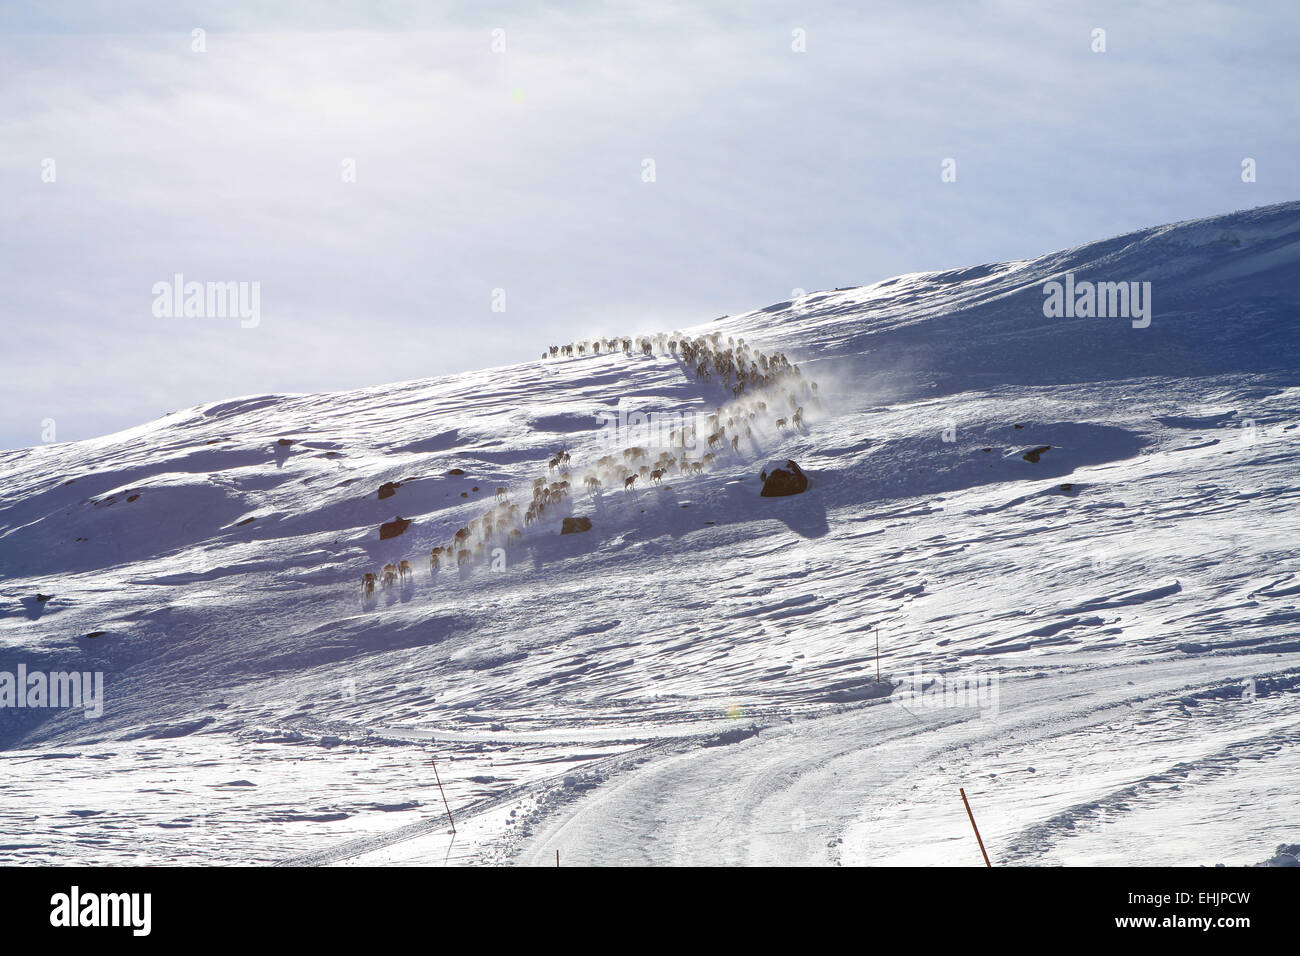 Troupeau de rennes en Norvège Banque D'Images